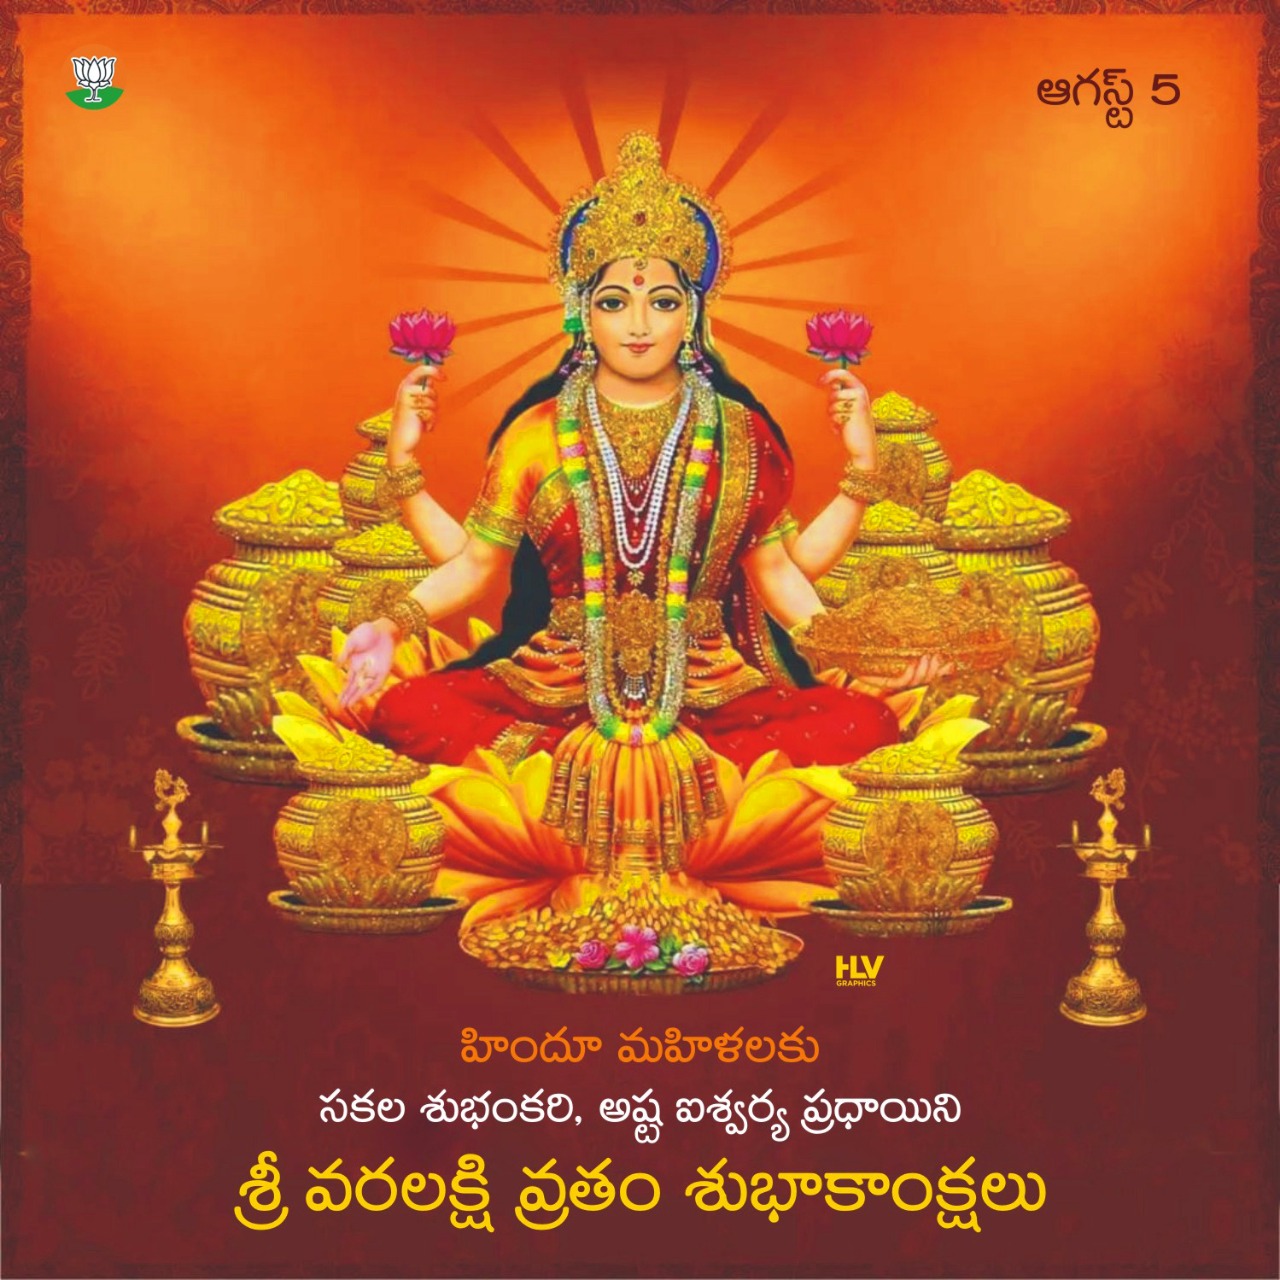 Varalakshmi vratham Telugu wishes